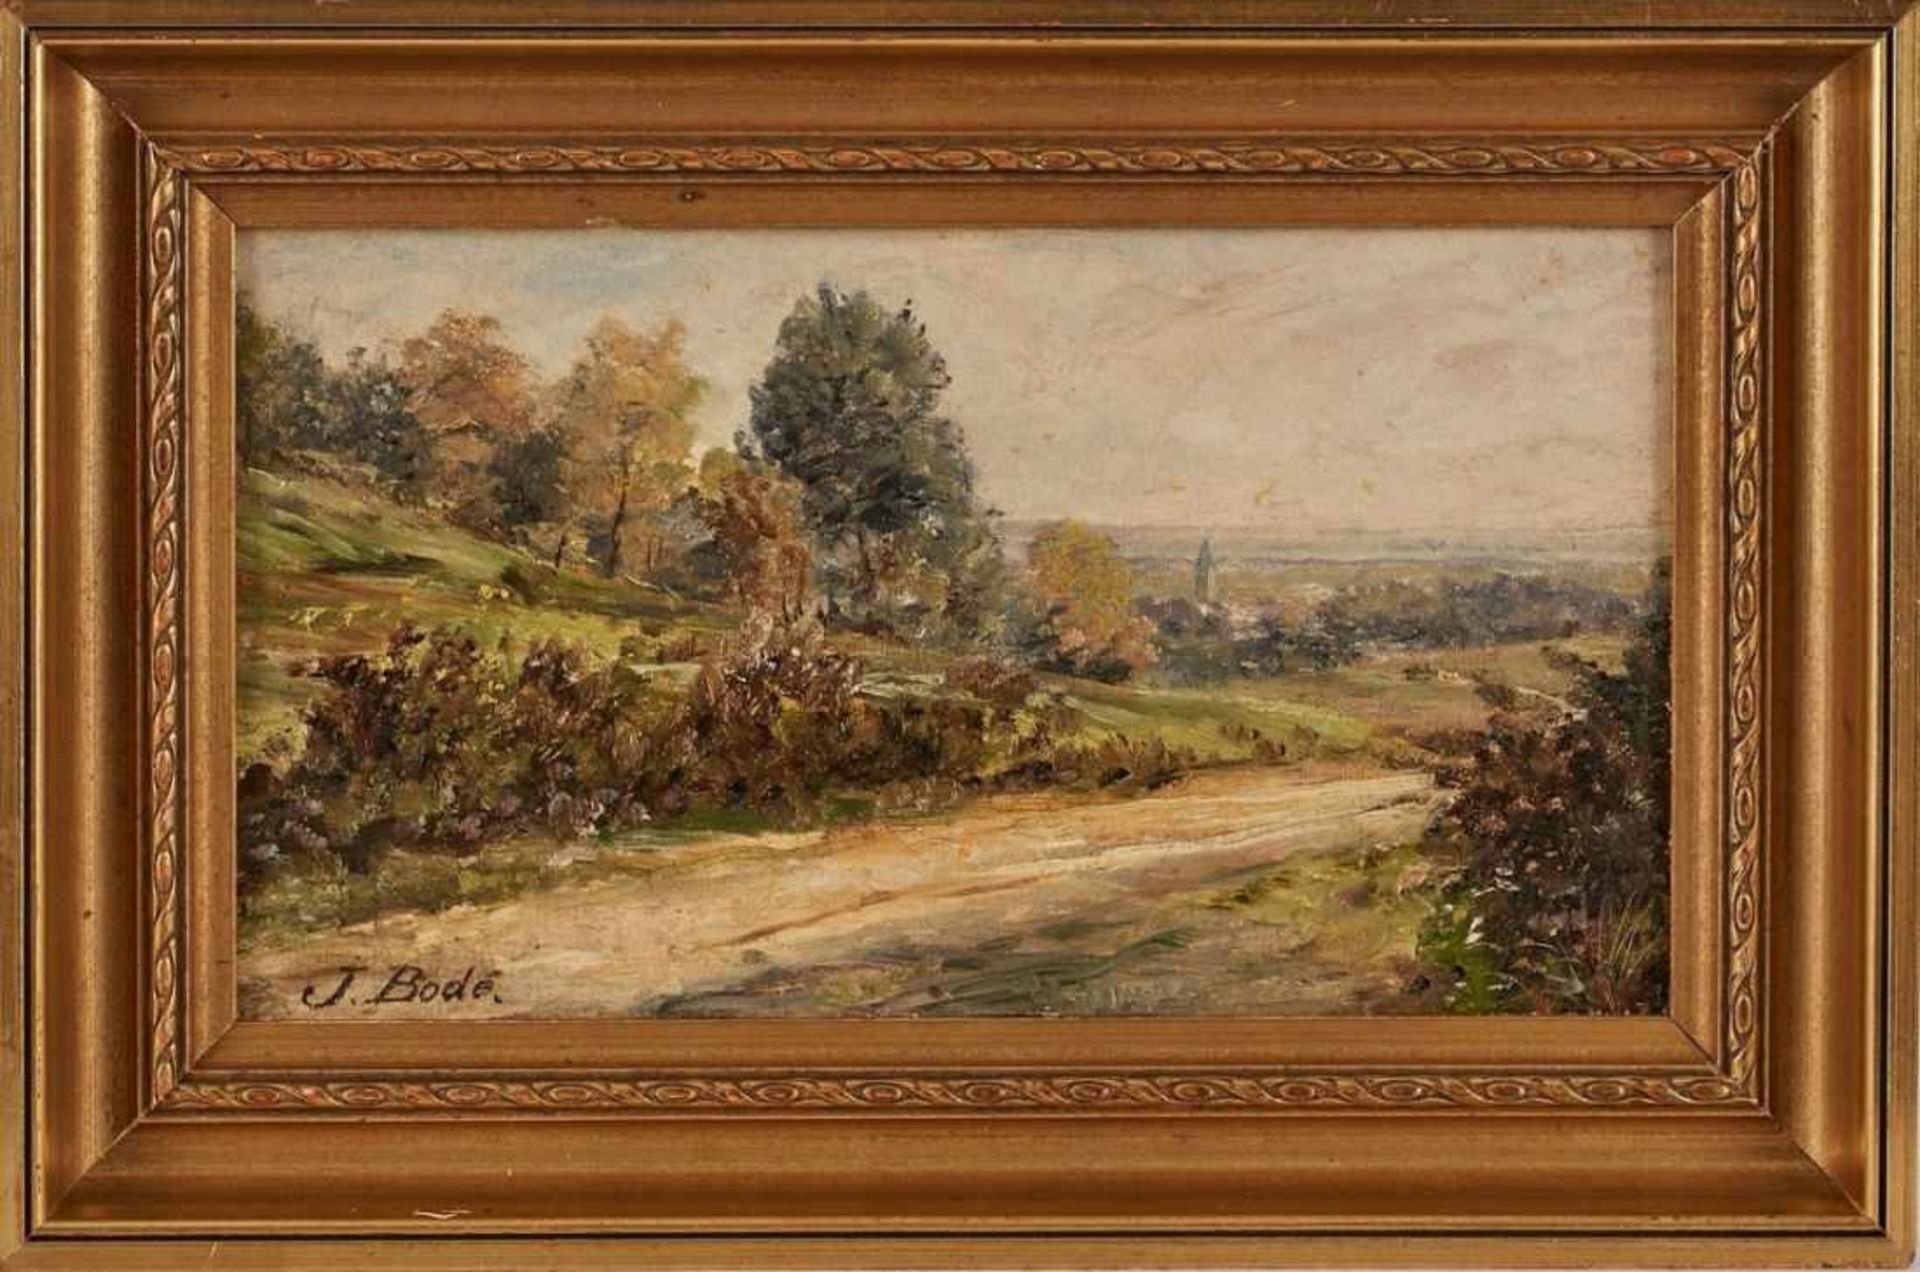 Gemälde Johannes Daniel Bode 1853 Offenbach - 1925 Frankfurt "Auf dem Wege von dem große Lohe nahe